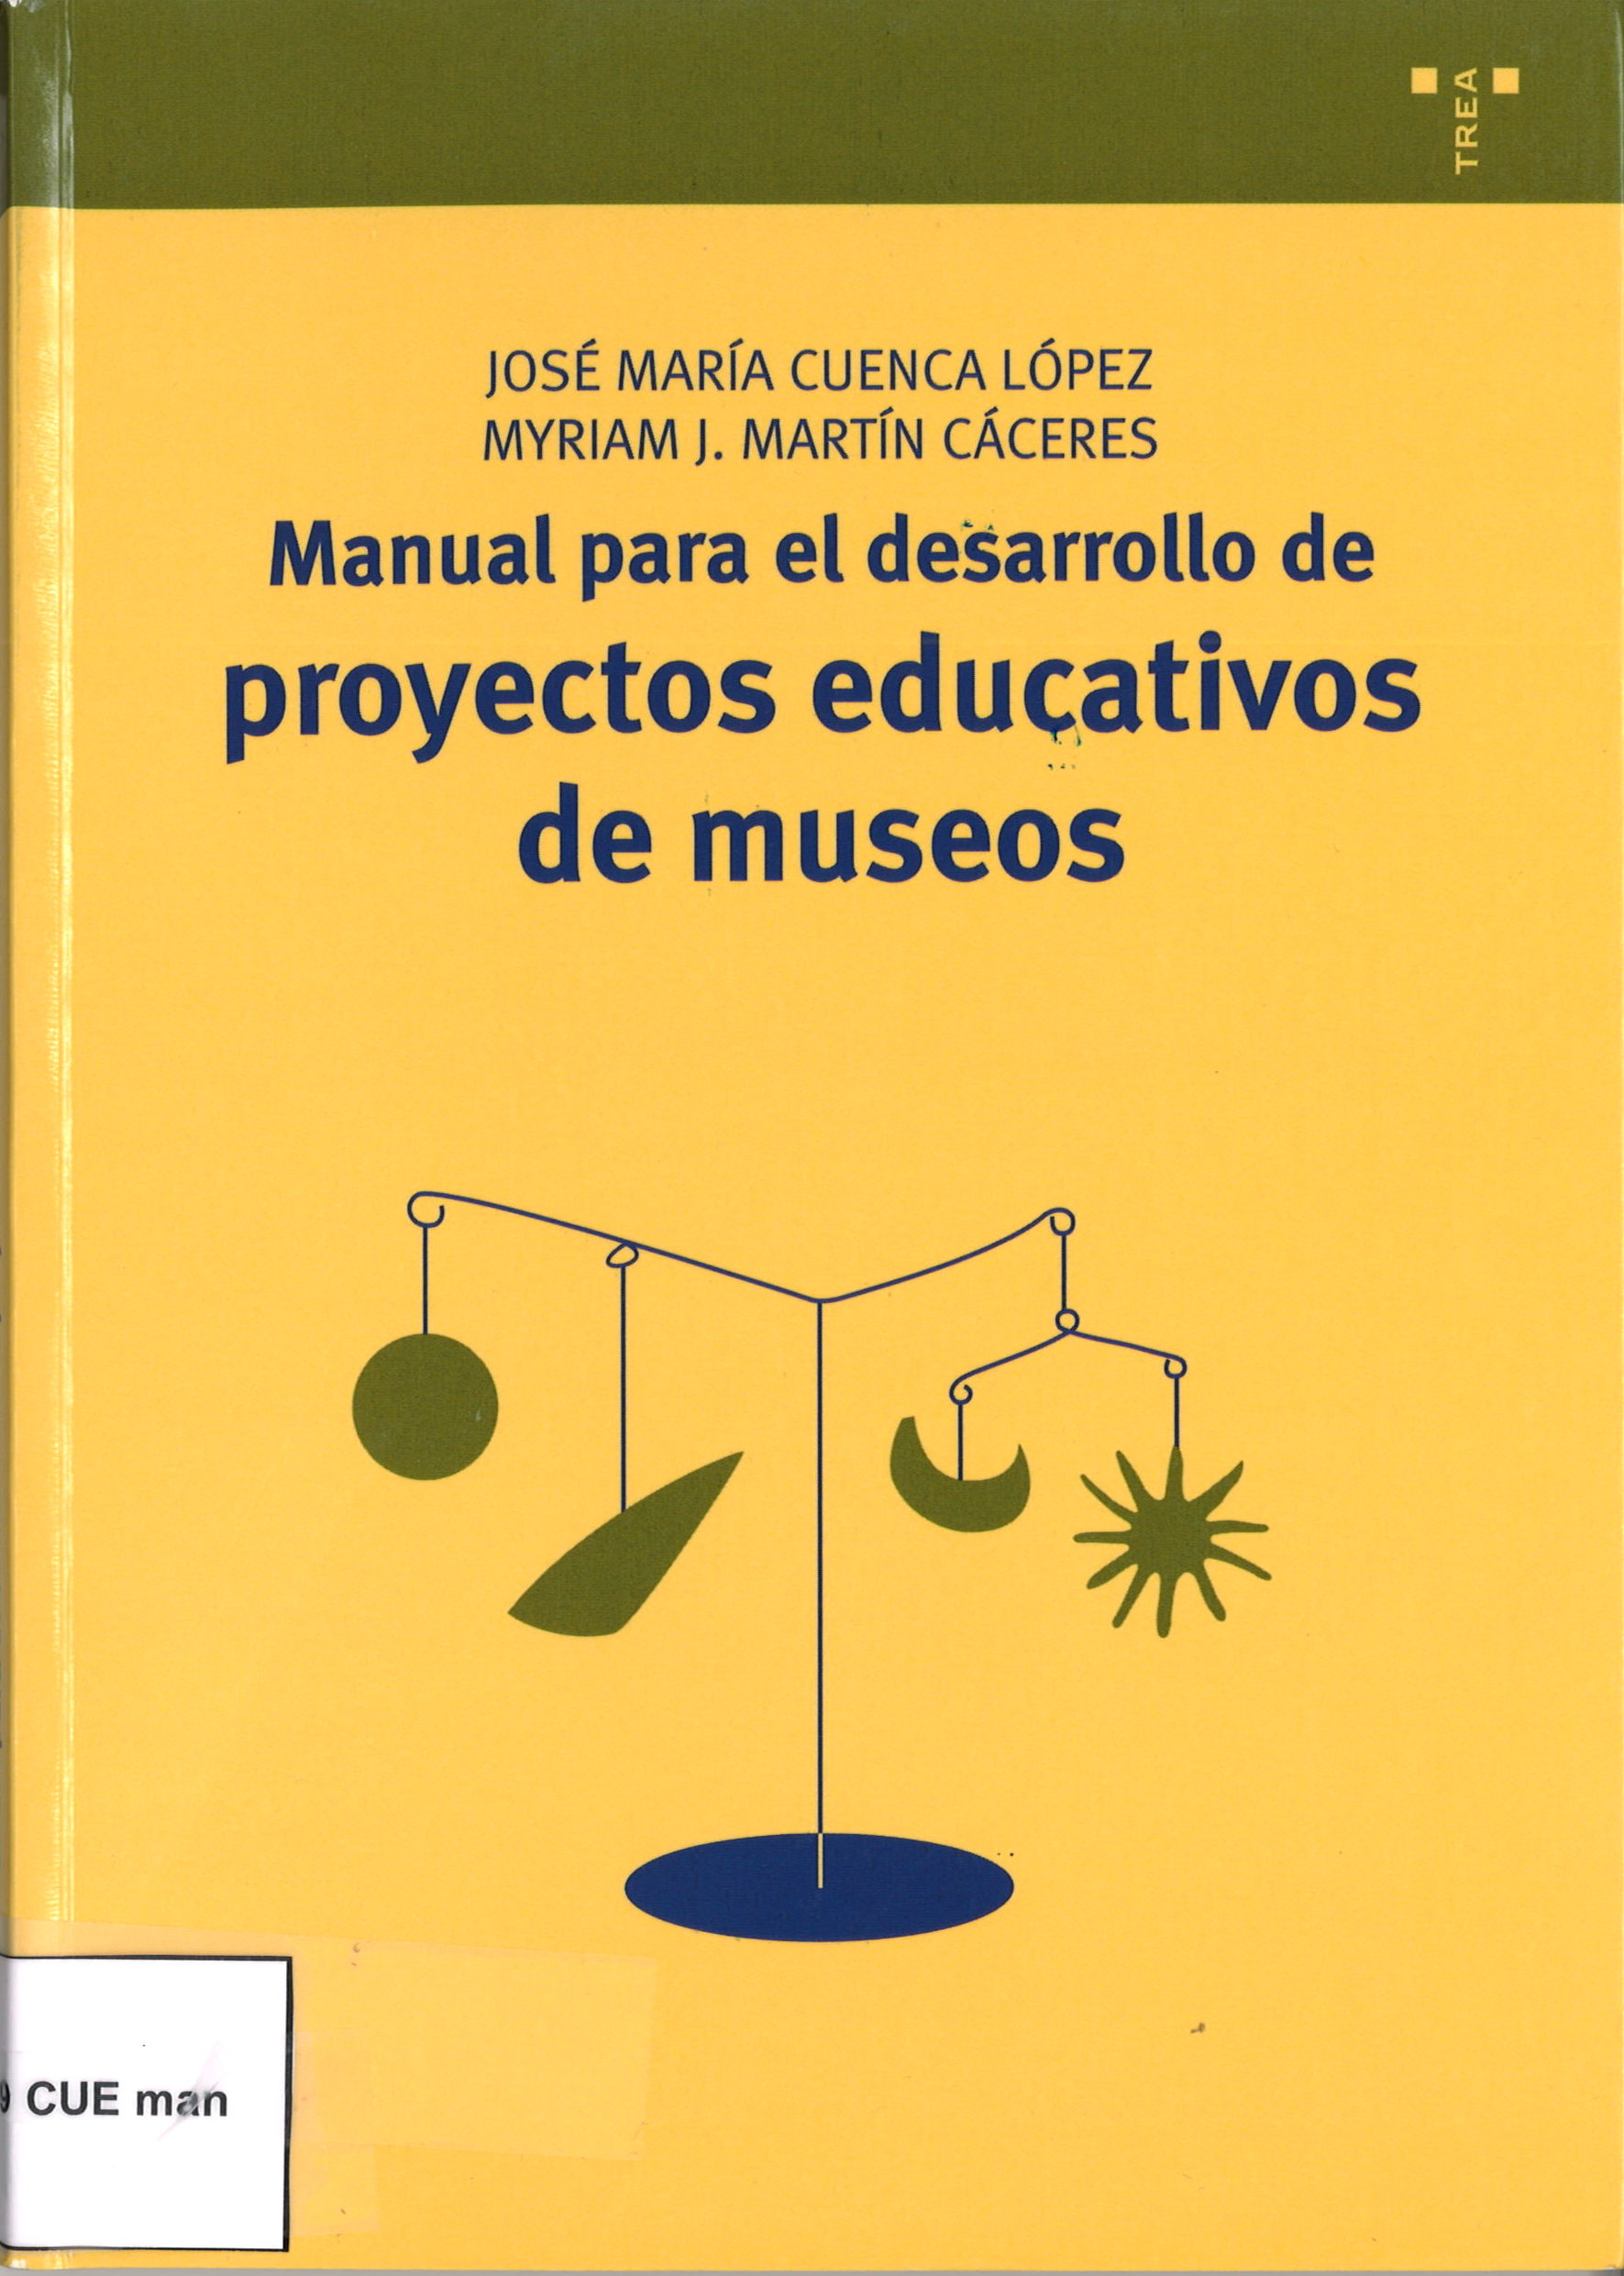 Manual para el desarrollo de proyectos educativos de museos. Jose Mª Cuenca López y Myriam J. Martín Cáceres-image